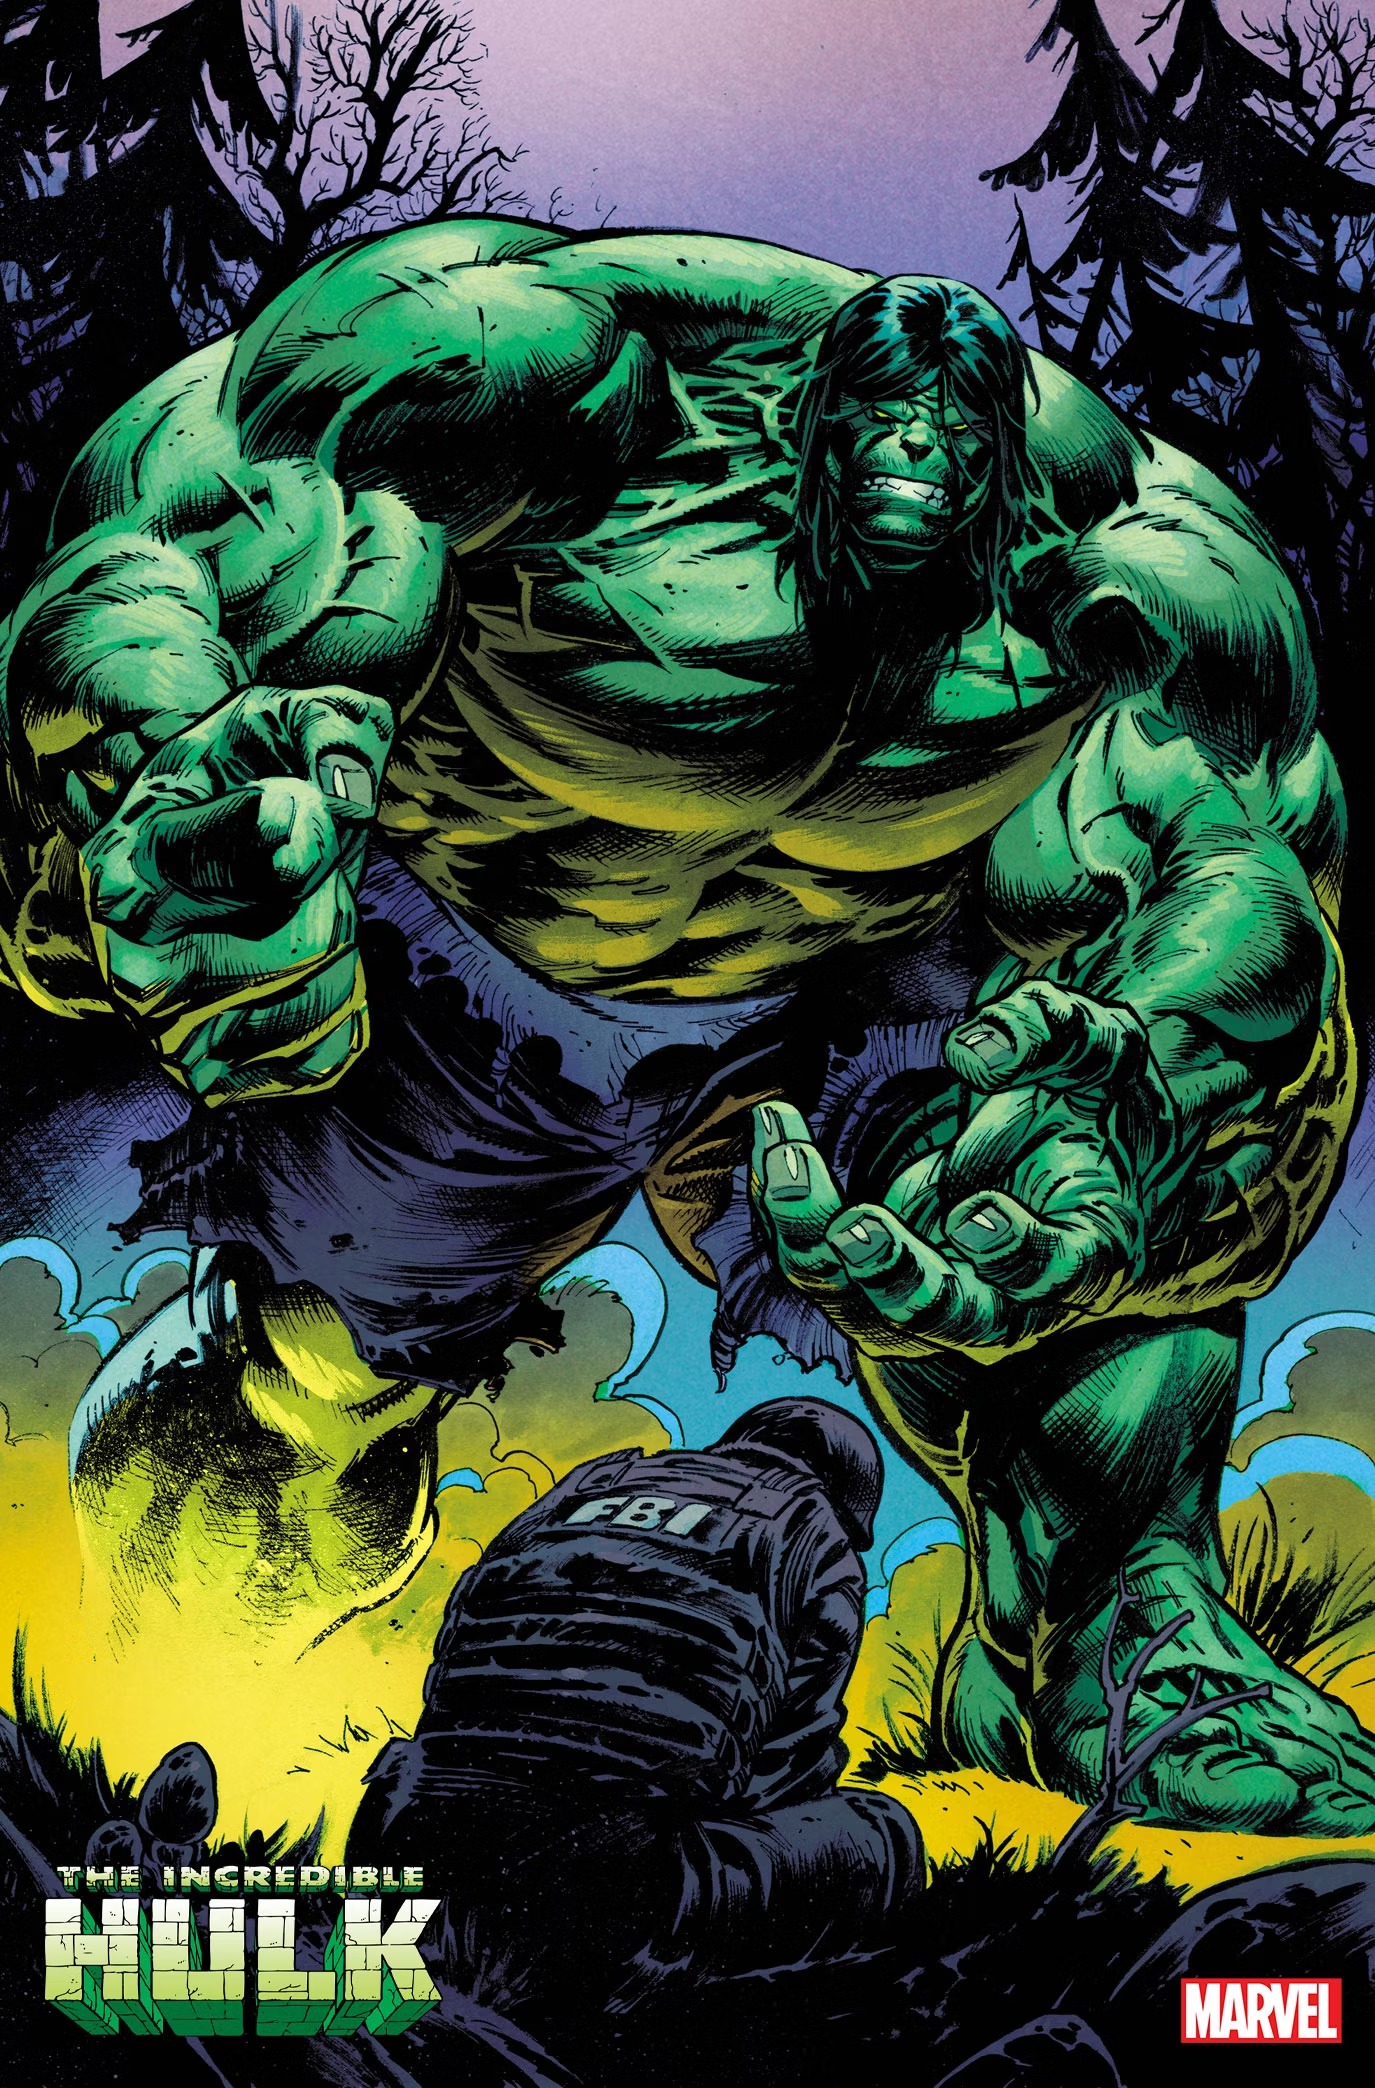 Nova HQ do Hulk surpreende os fãs com arte visceral